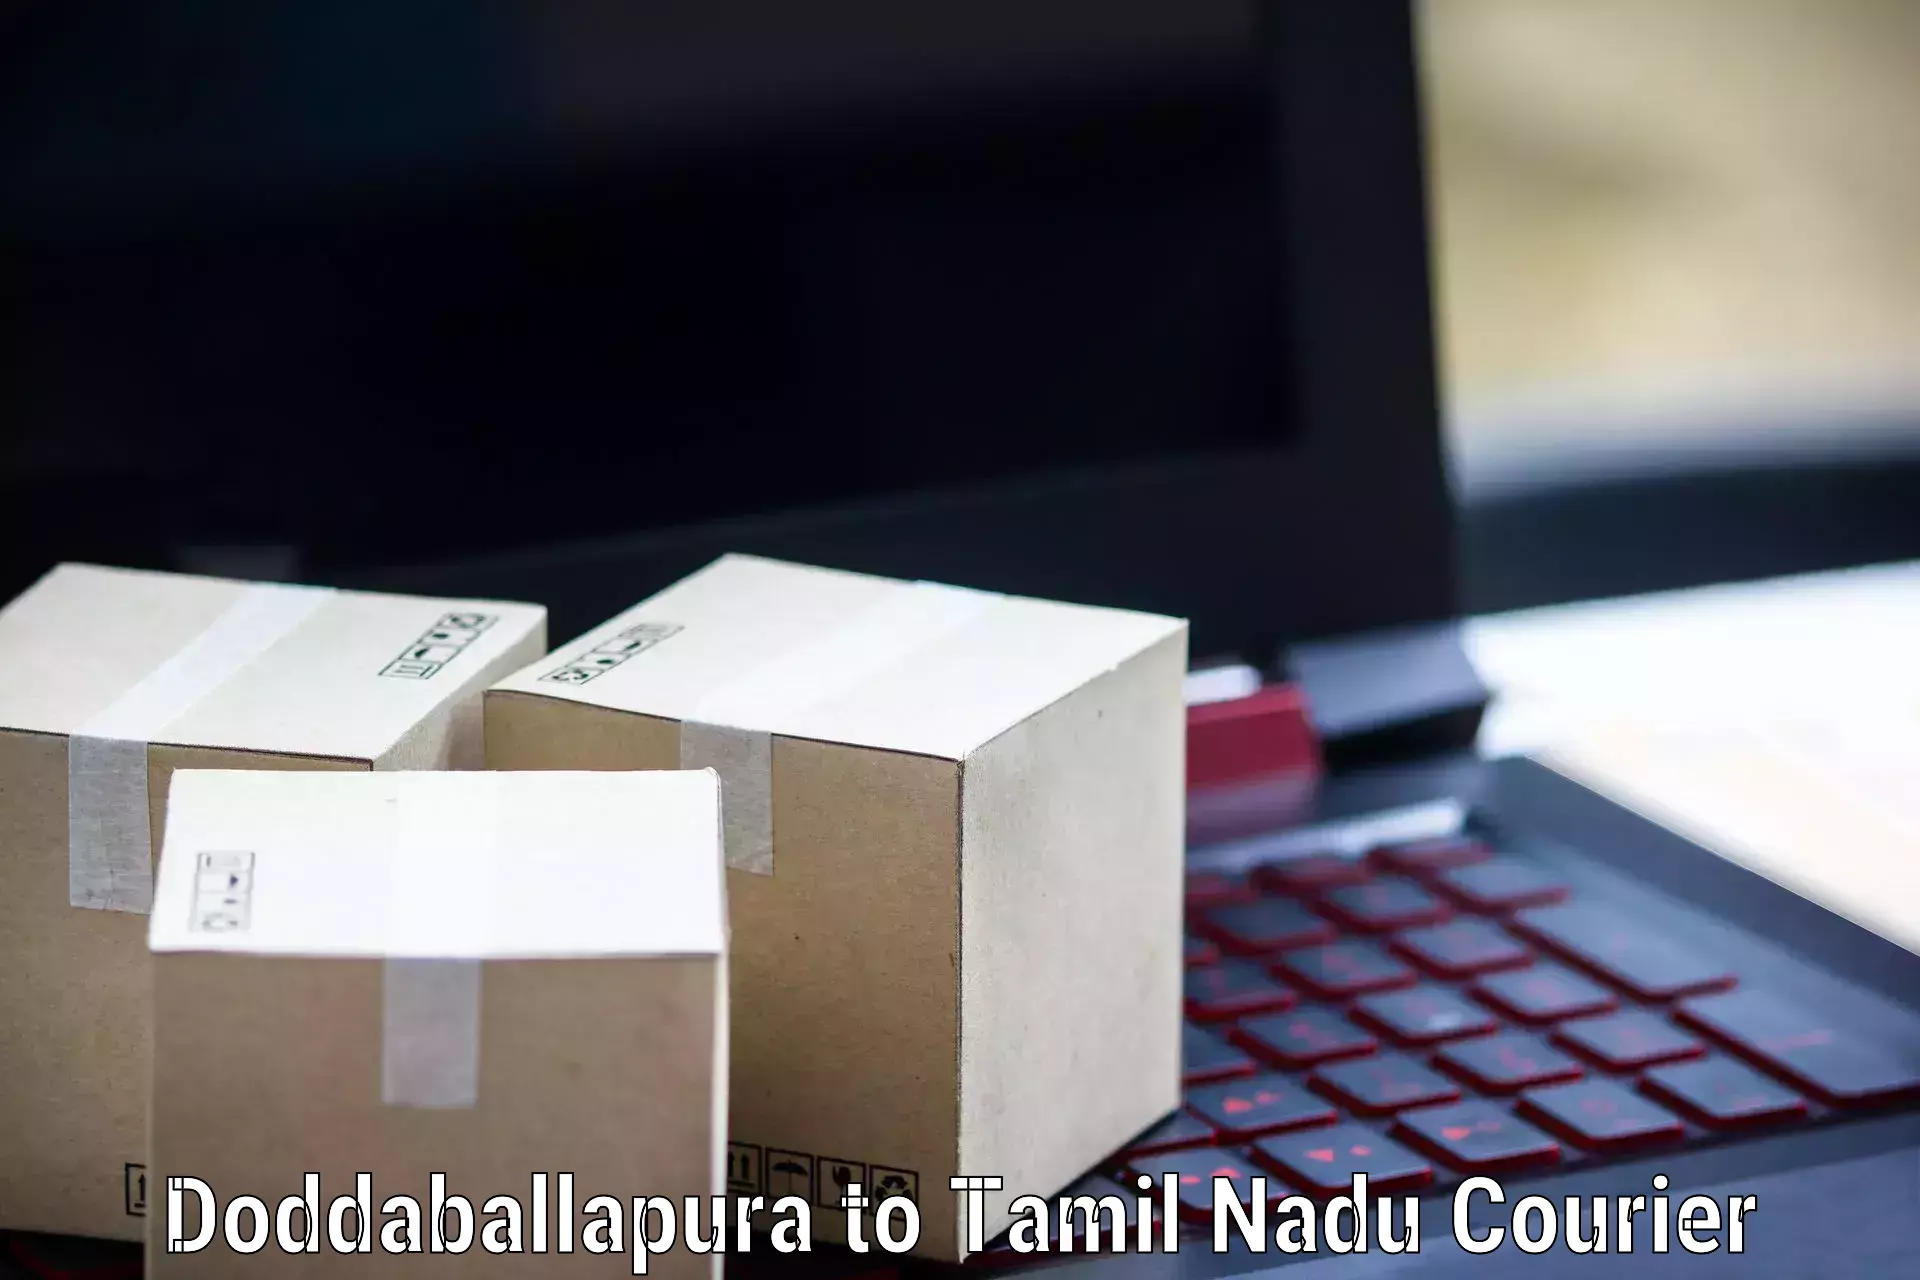 On-call courier service Doddaballapura to Vellore